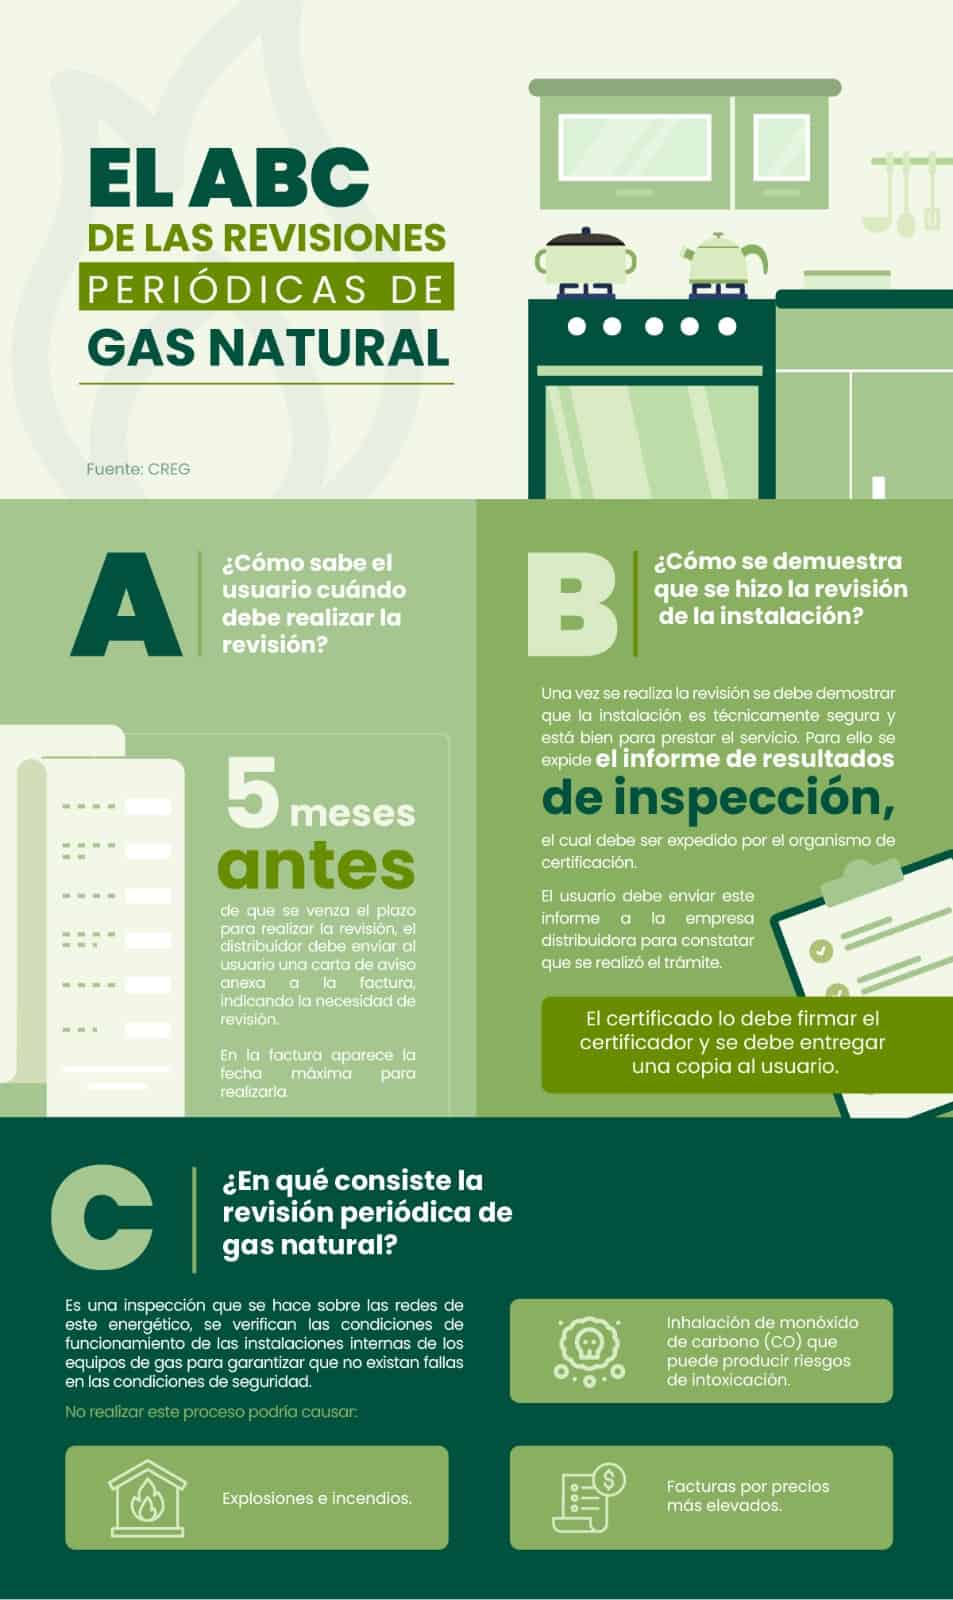 Gas natural: ¿Por qué es importante hacer una revisión periódica?